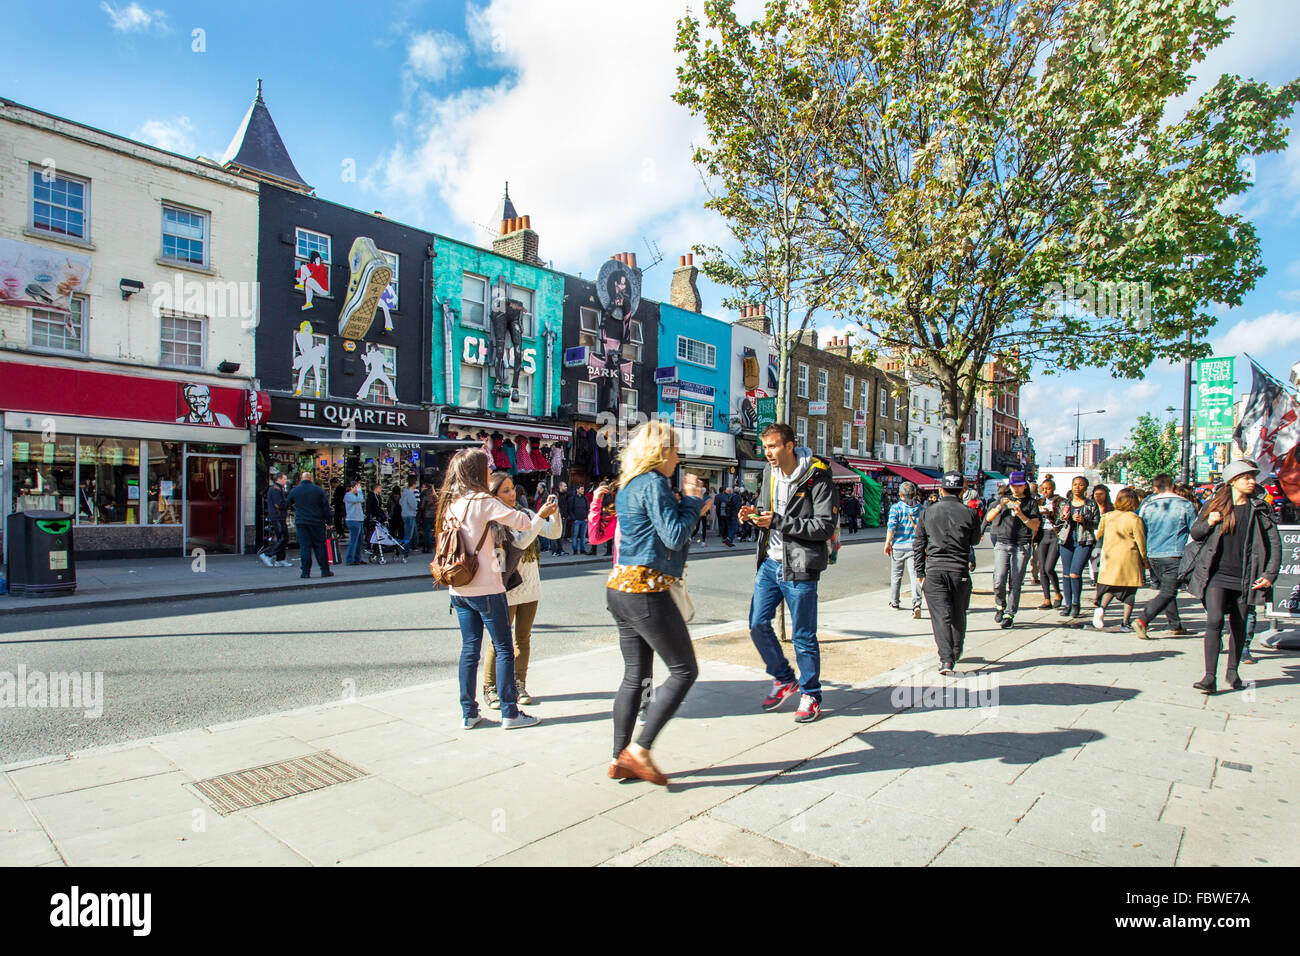 LONDON, UK - 10. Oktober 2014: Abgebildet ist ein street View von historischen Camden Town im Stall mit Besucher sichtbar. Stockfoto